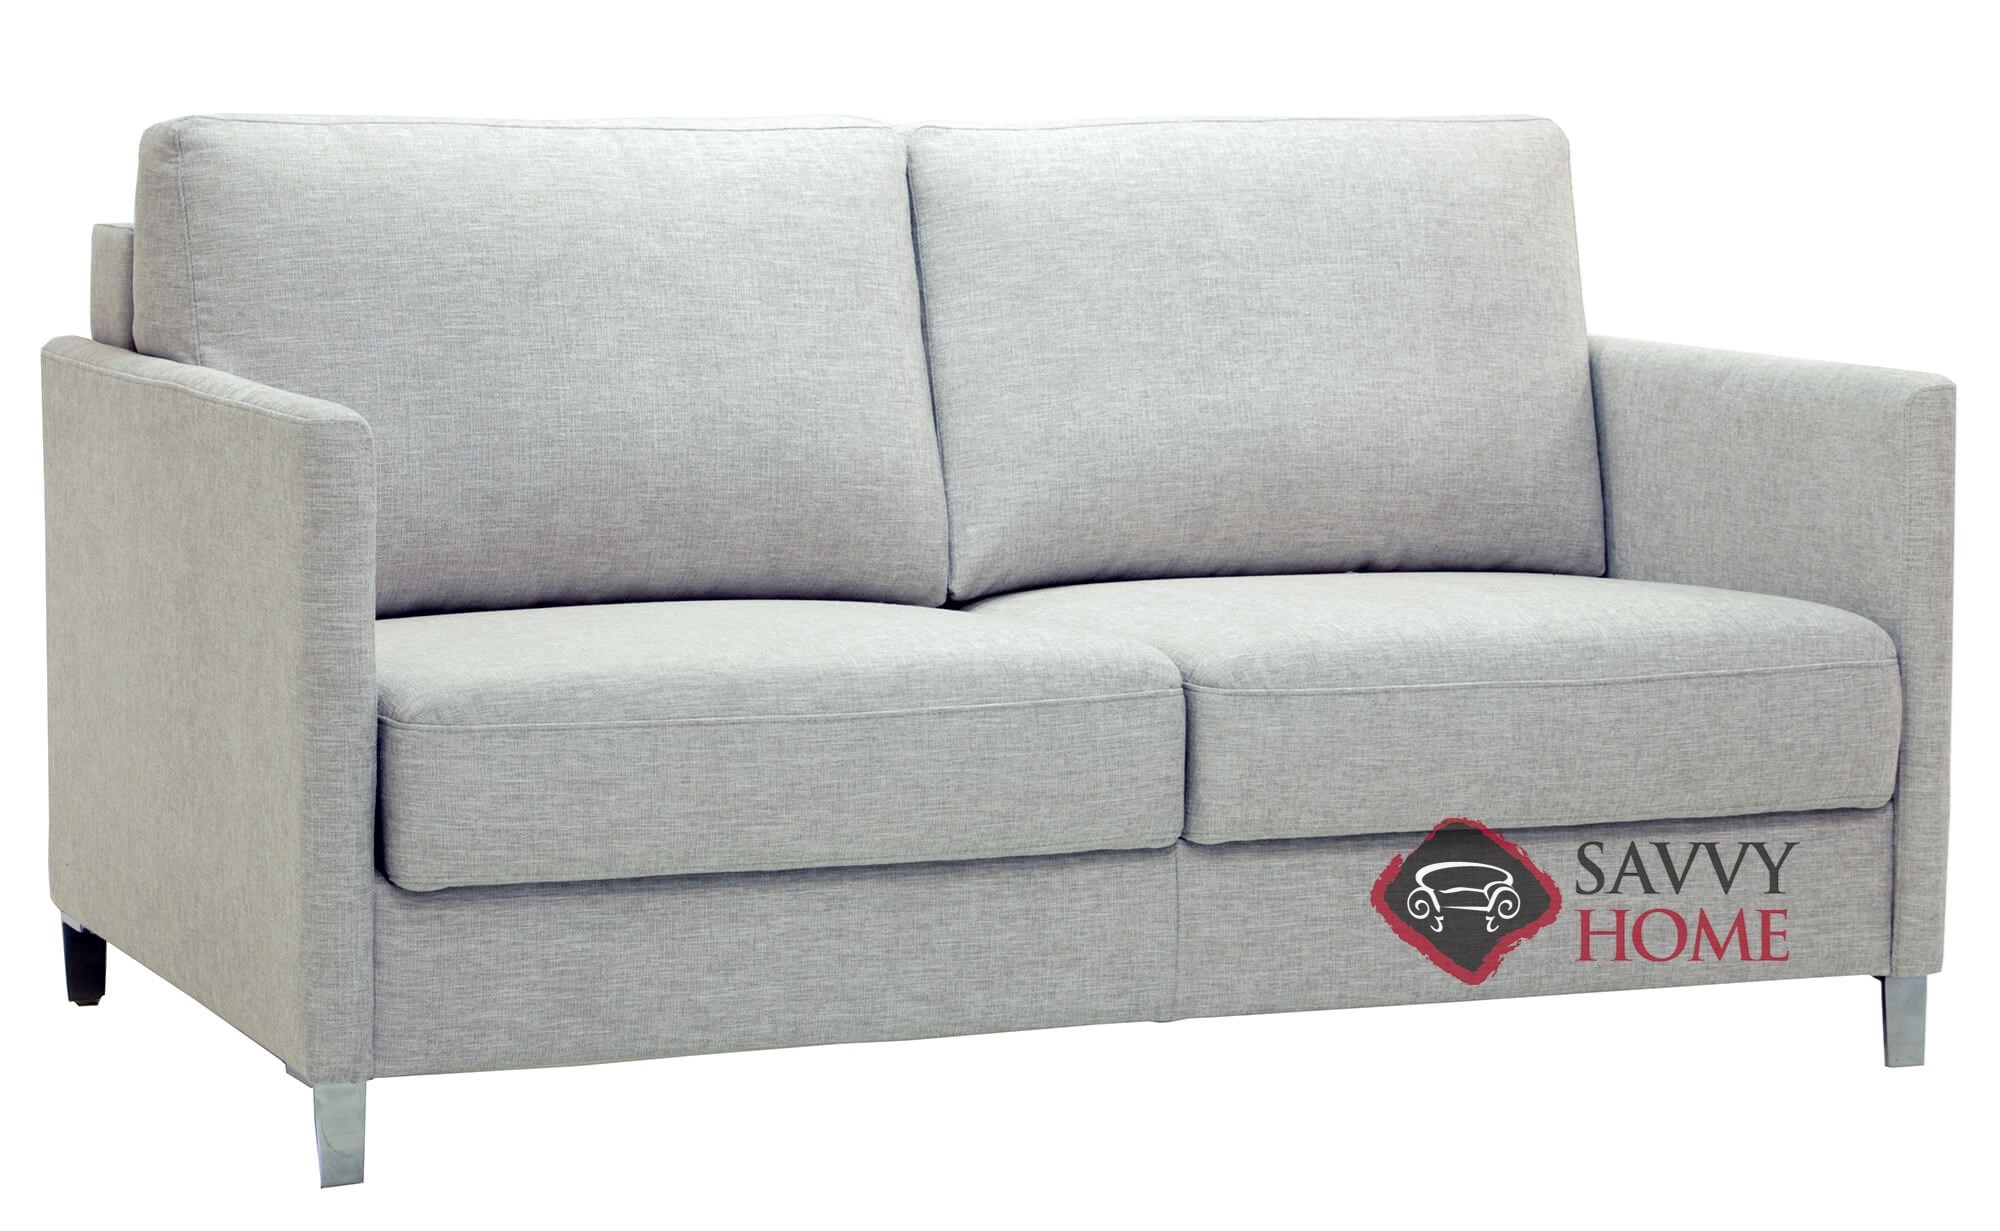 flex-a-bed sofa